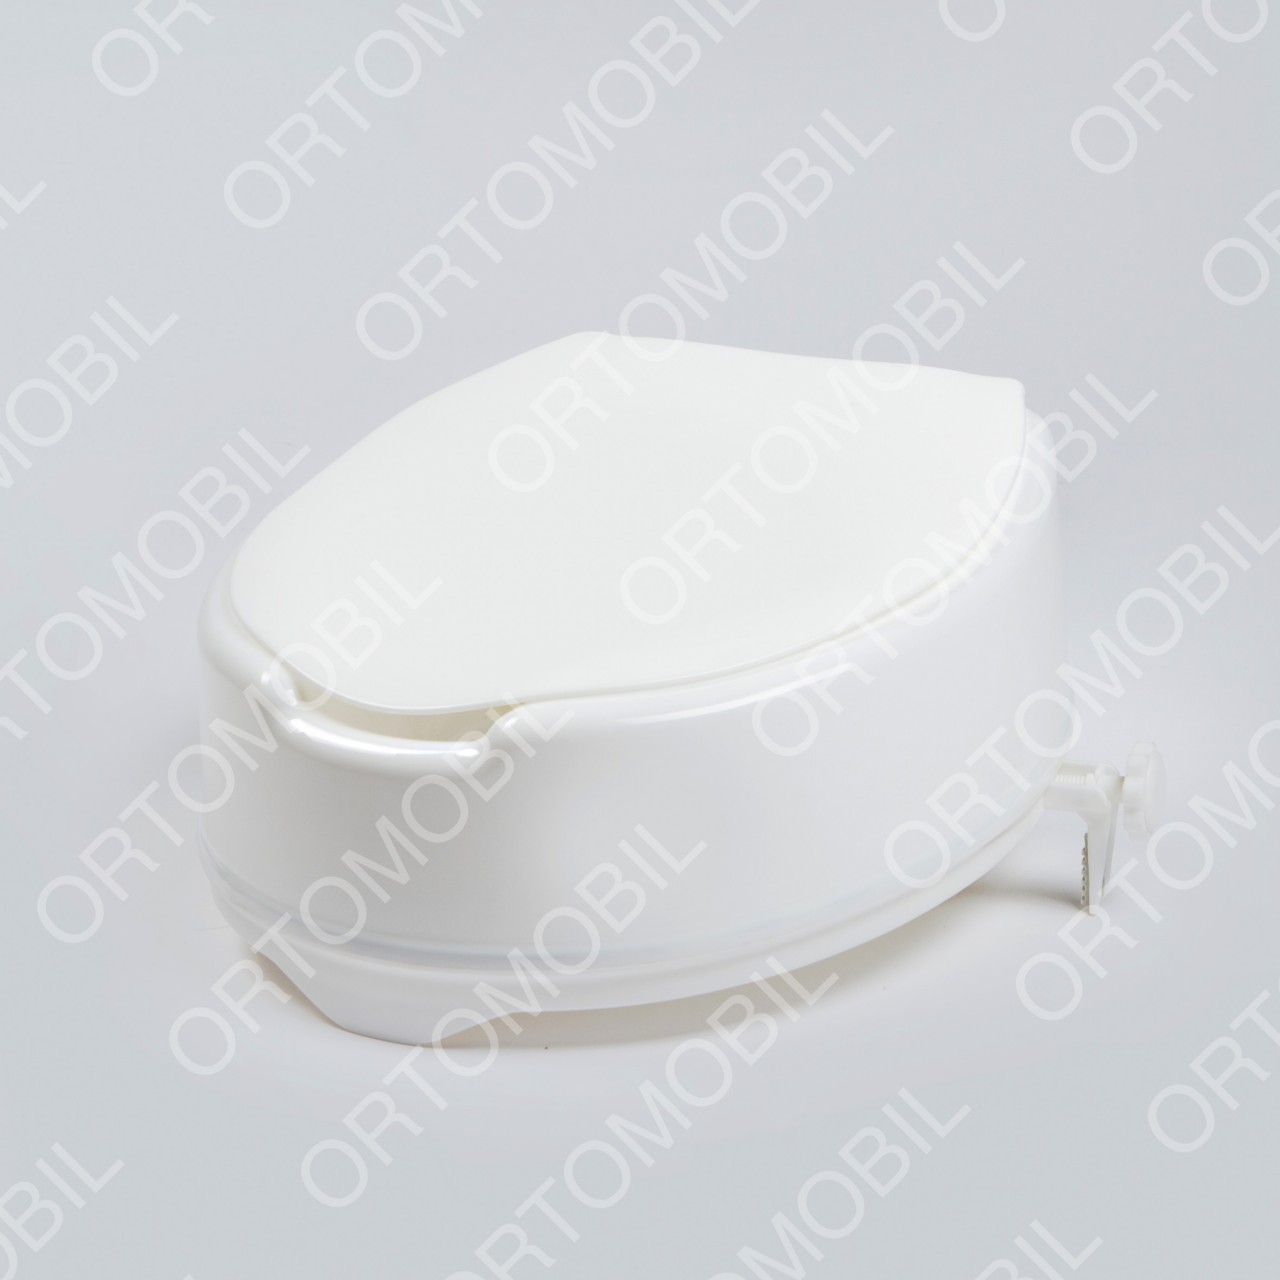 Inaltator WC de 15 cm cu capac Ortomobil 027060L6